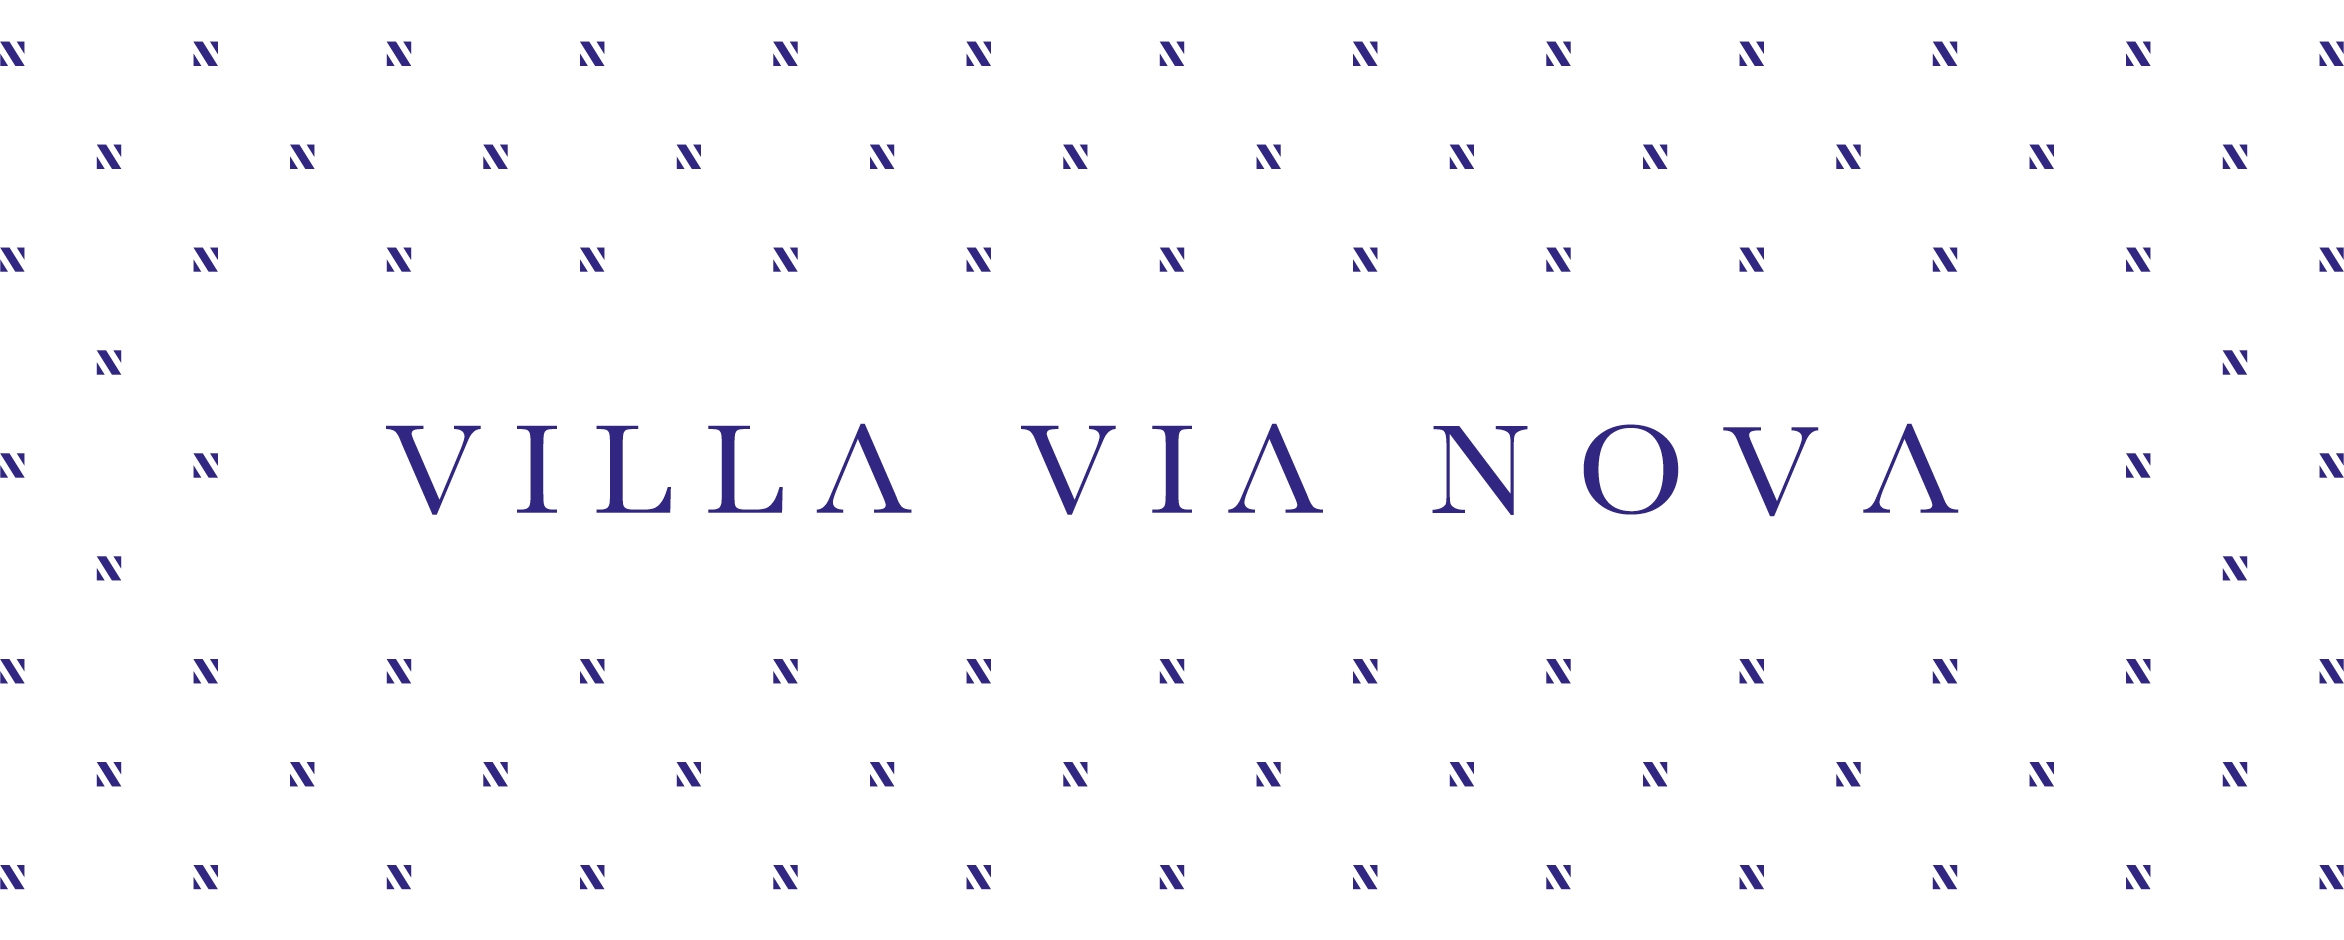 Het logo van Villa Via Nova omringd door een patroon van het beeldmerk.